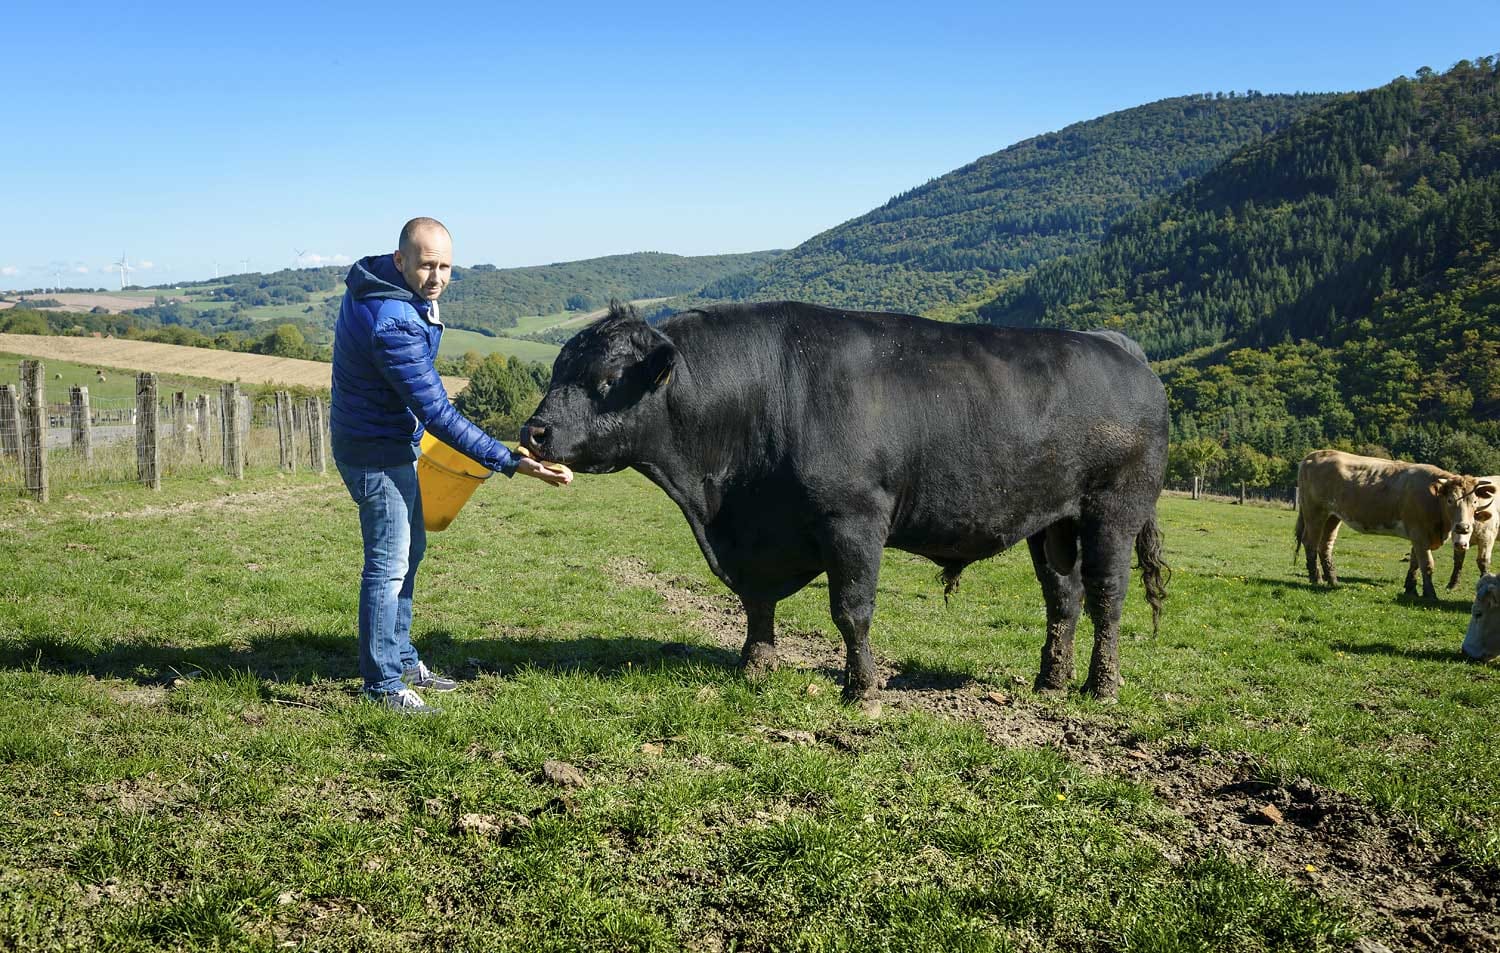 "Mir persönlich schmeckt alles vom Angus Rind am besten", erzählt Metzgermeister David, "Ochse oder Färse sollte es sein. Ich bevorzuge Gras gefütterte Rinder."